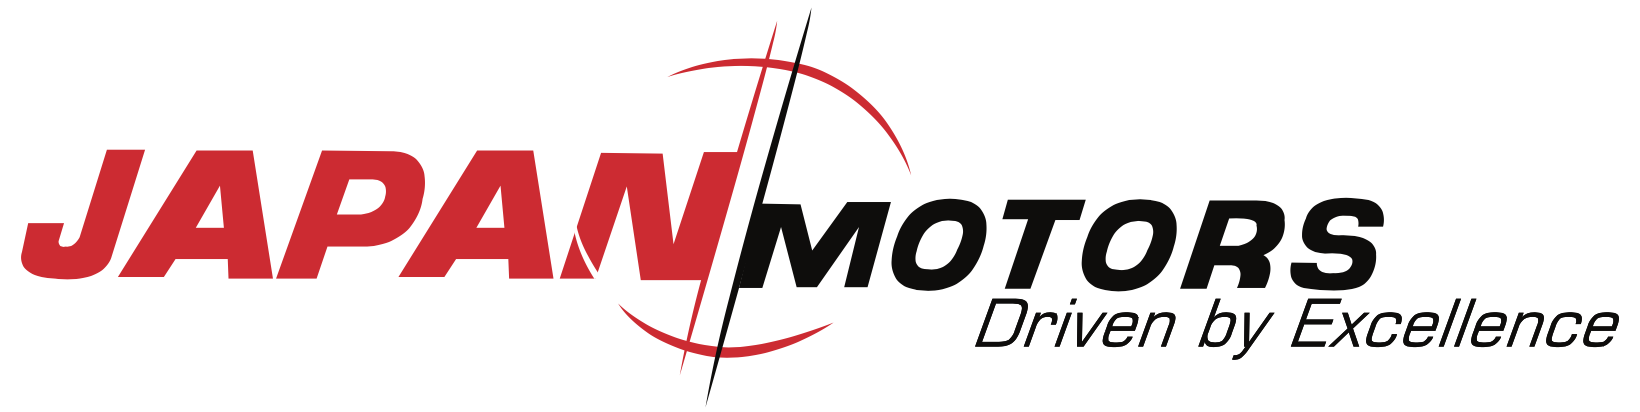 Japan Motors Logo